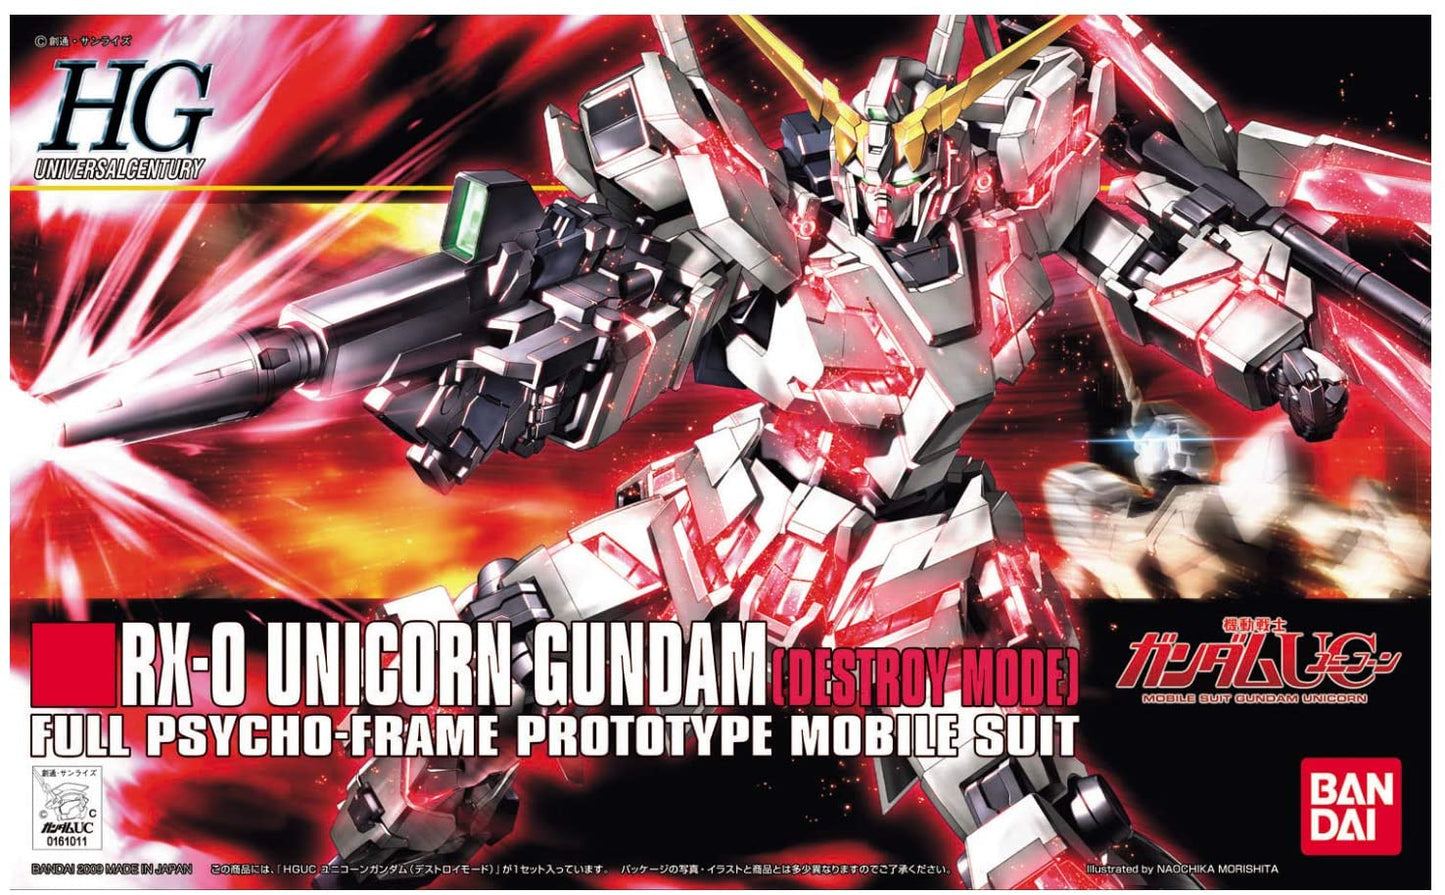 Unicorn Gundam (modo de destrucción) "Gundam UC", Kit de modelo Bandai HGUC 1/144